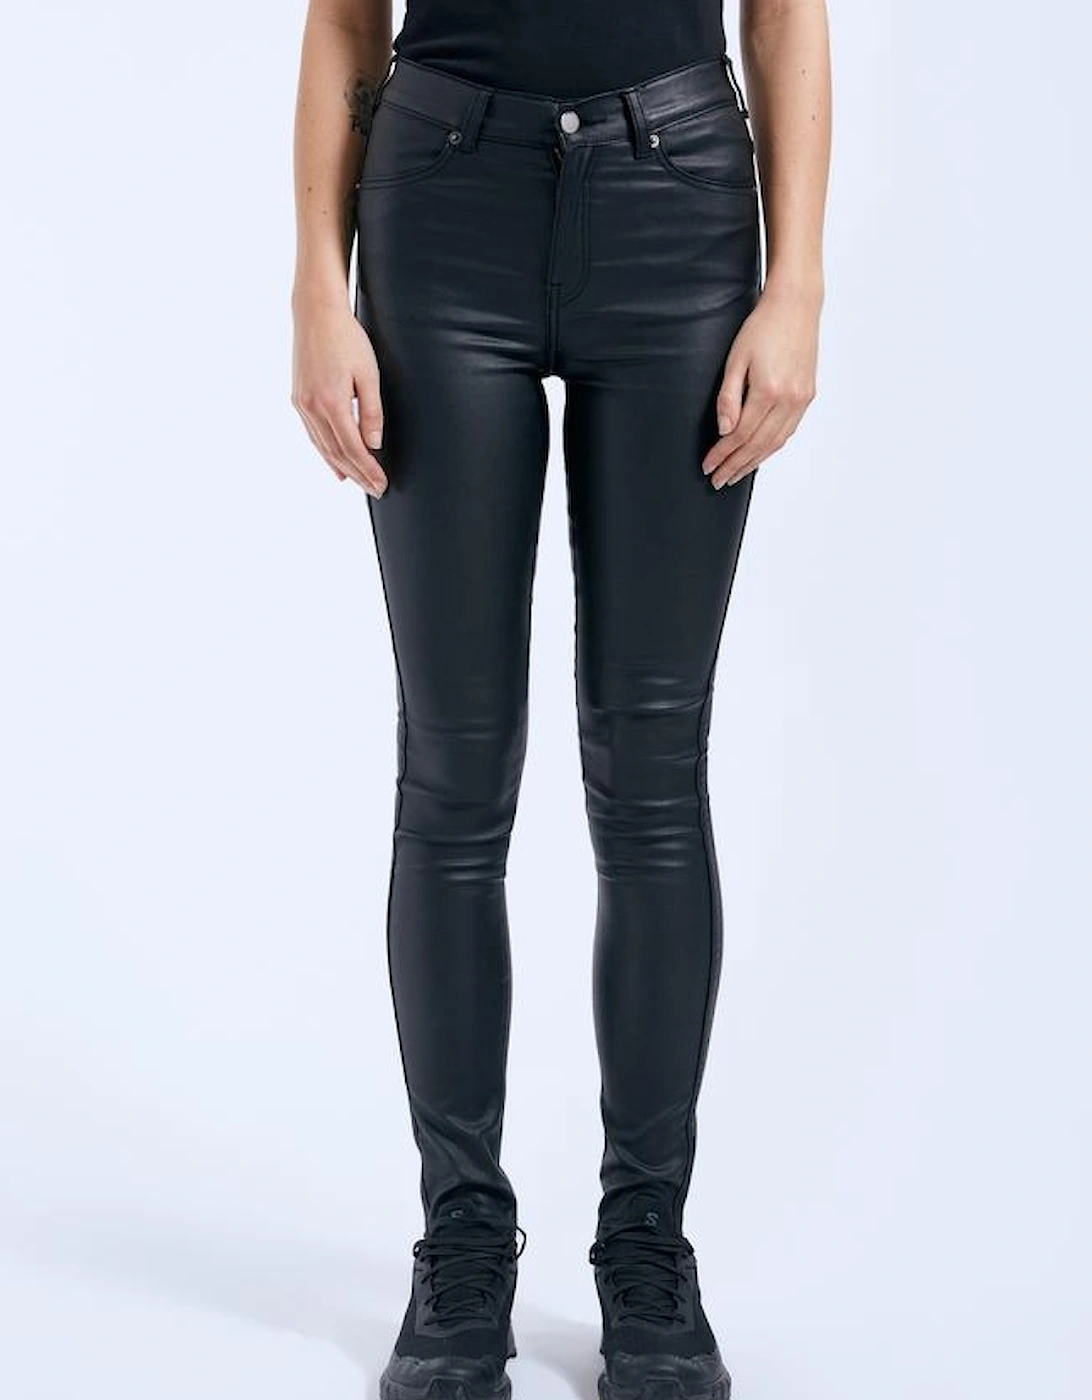 Lexy black metal skinny jeans, 4 of 3